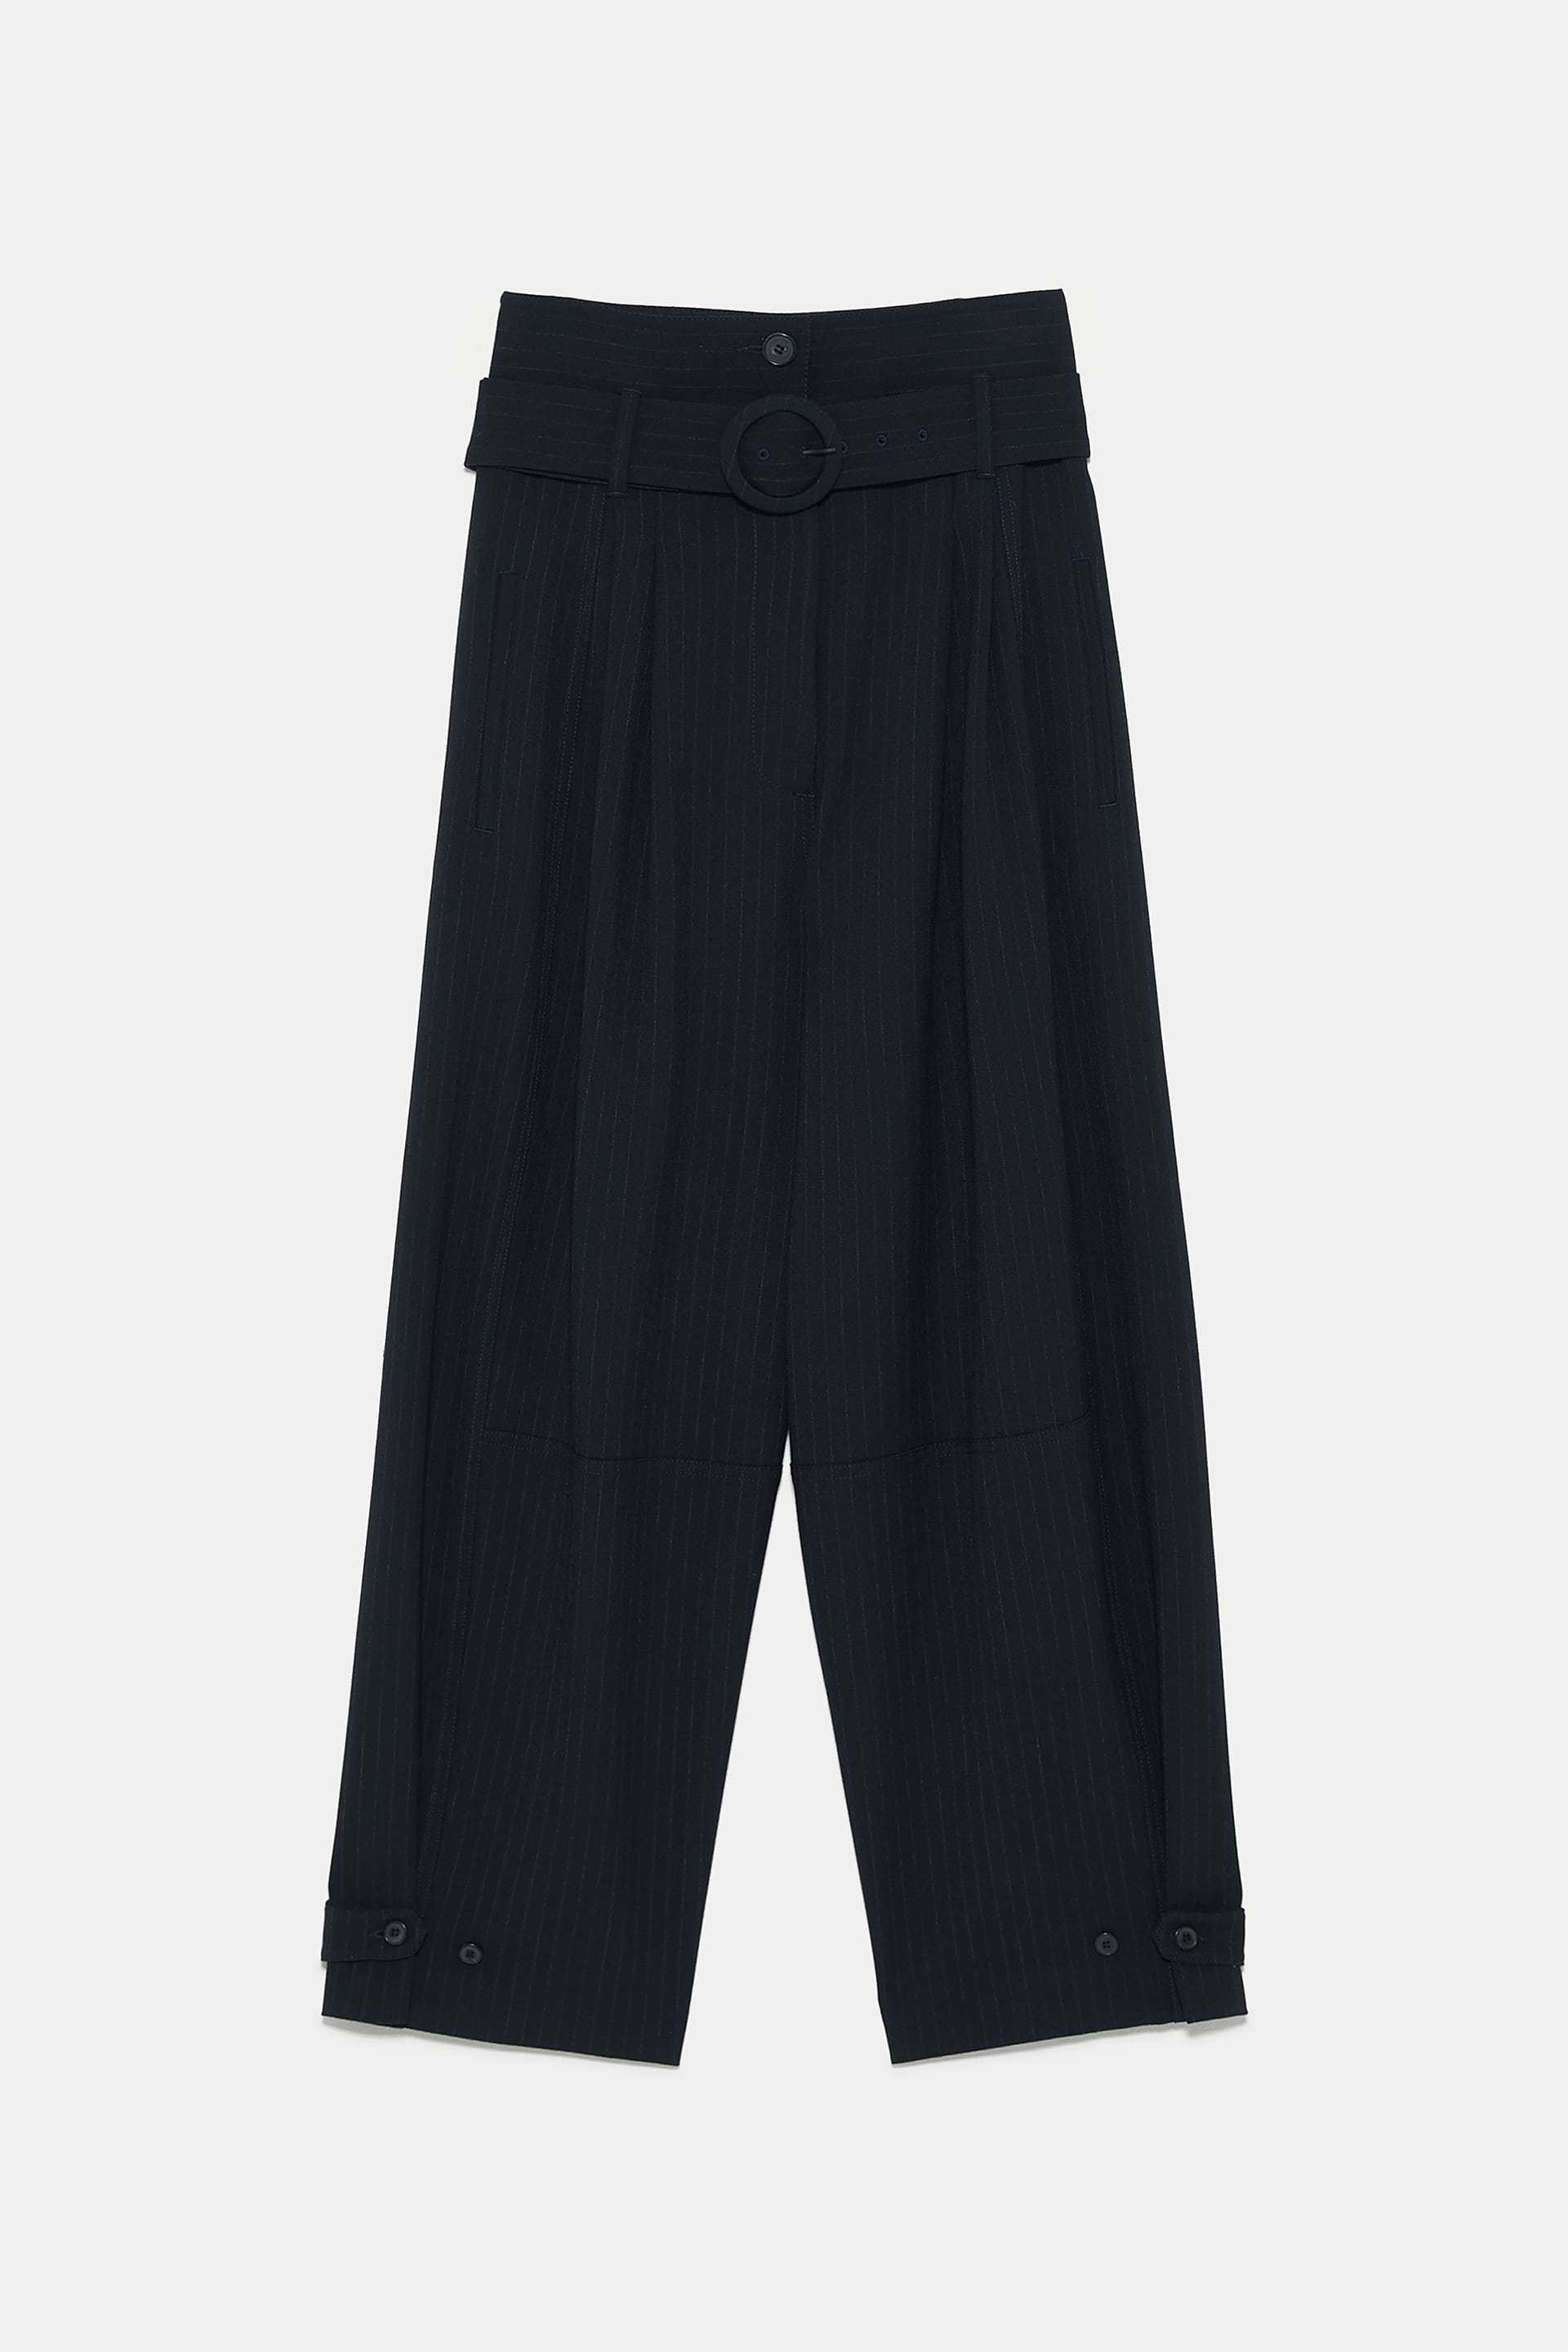 Pantalones de rayas, de Zara (49,95 euros).